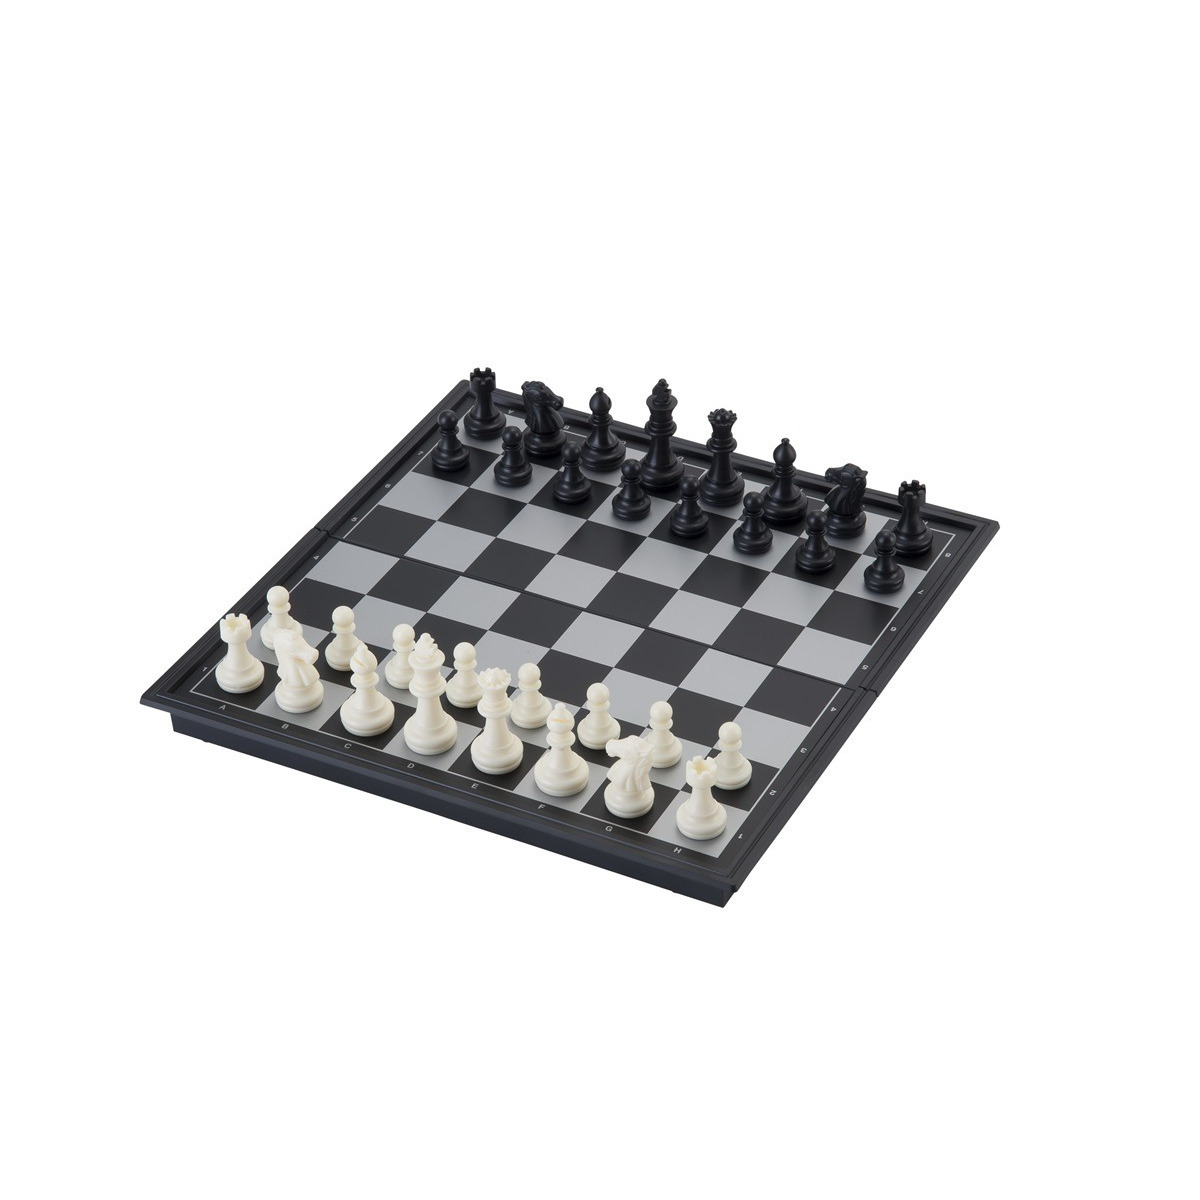 Reis schaak opklapbaar magnetisch bord 24 x 24 cm